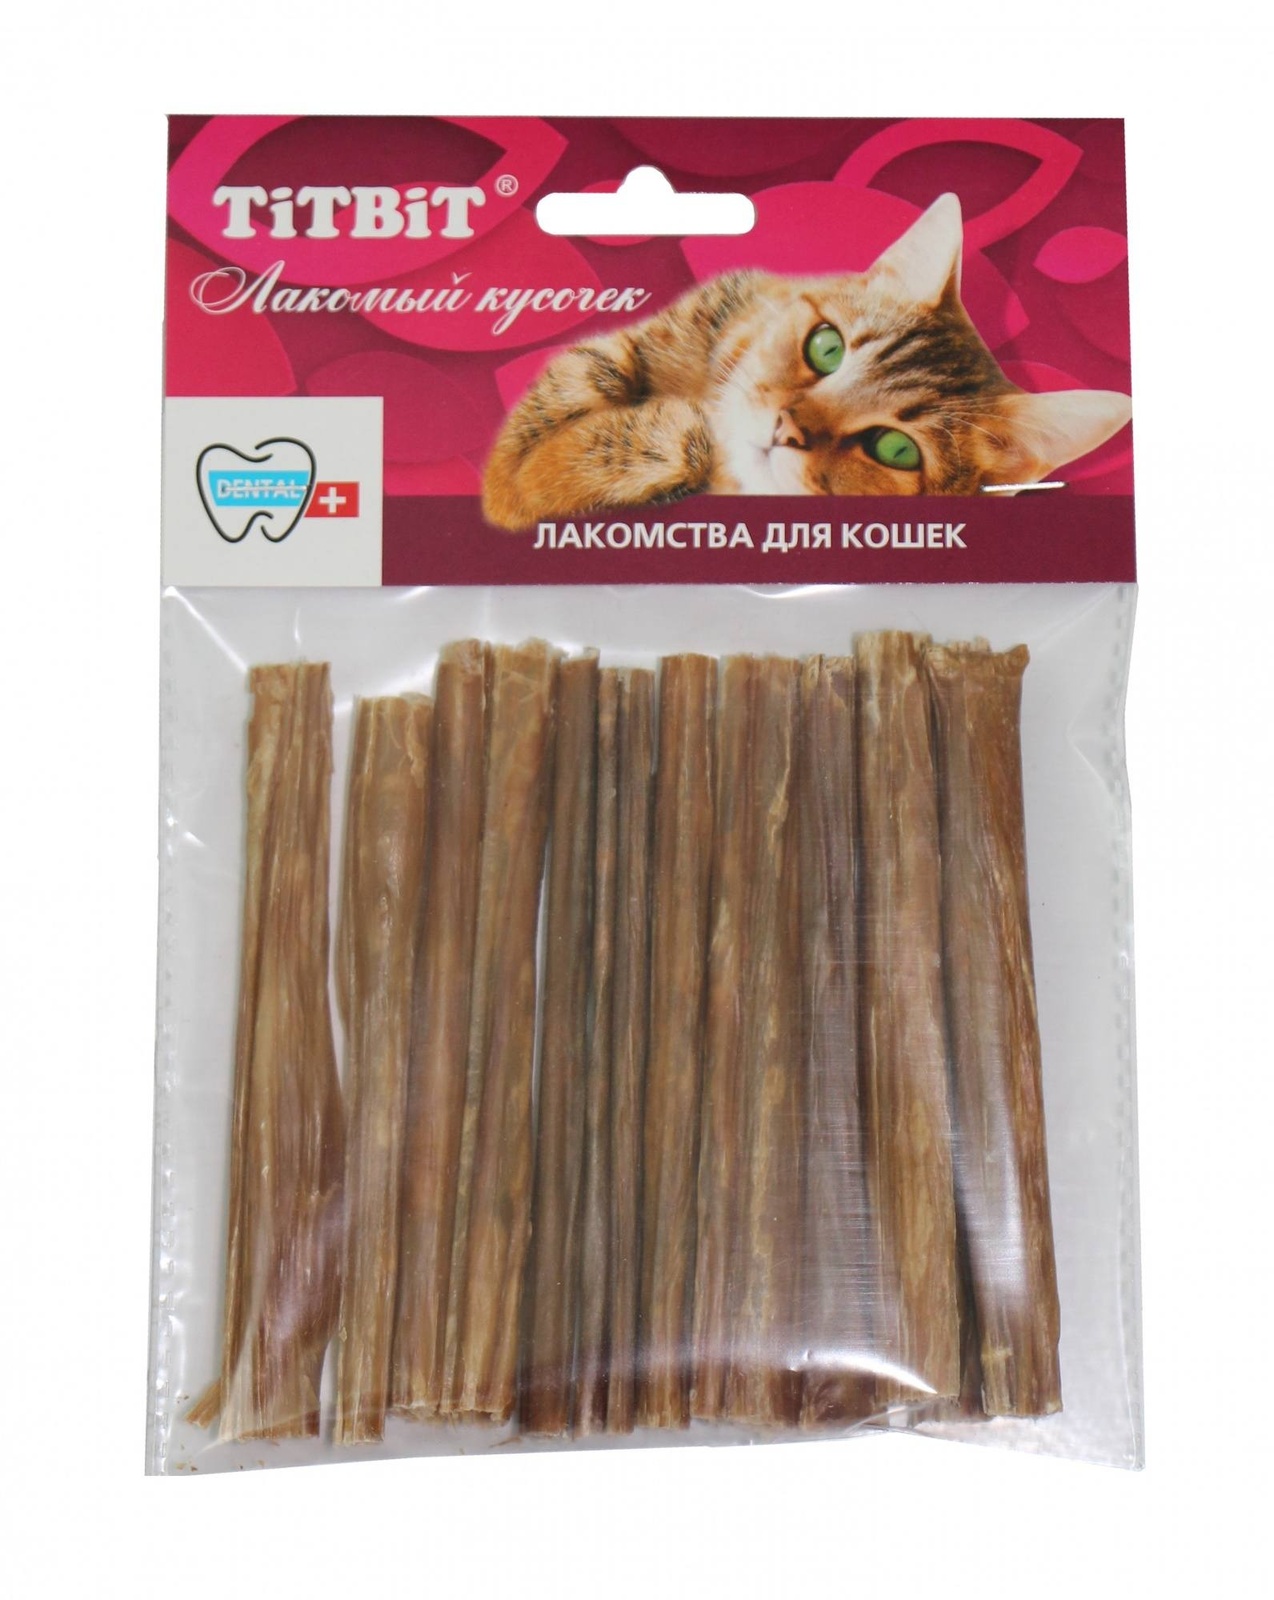 TiTBiT TiTBiT кишки говяжьи для кошек (32 г)